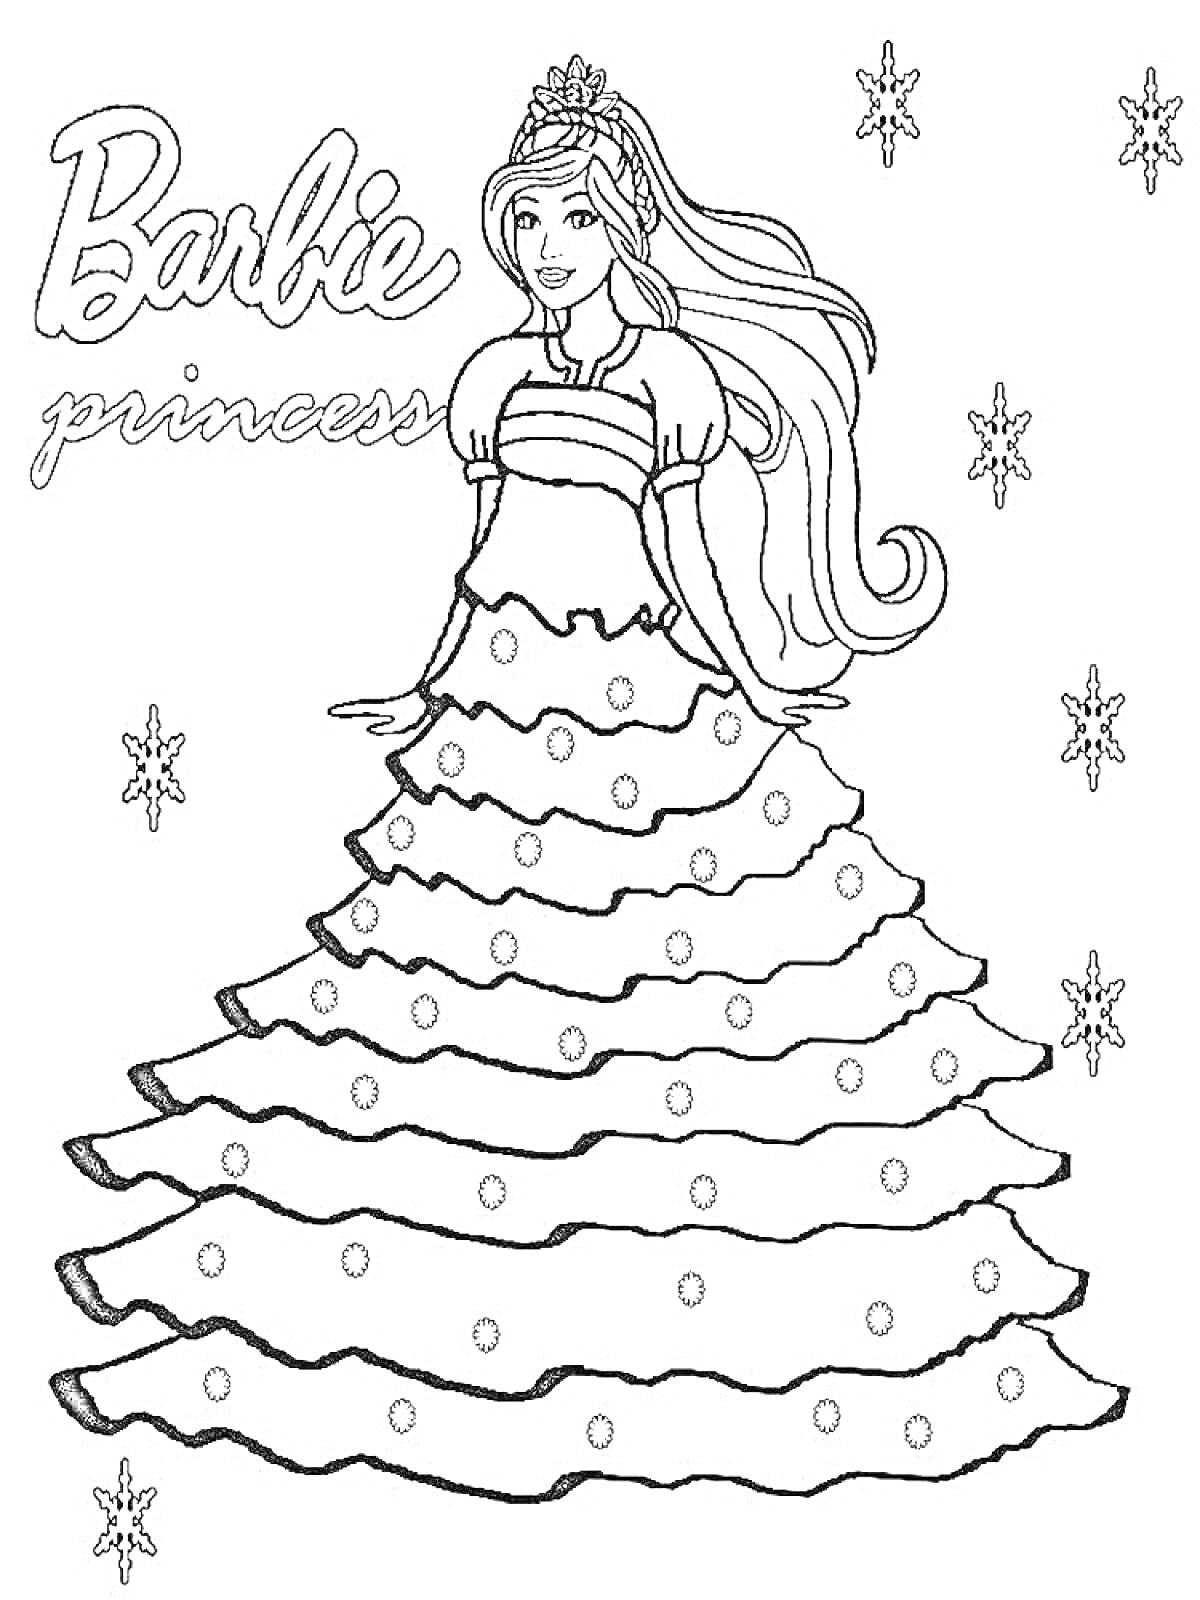 Раскраска Принцесса Барби в пышном платье и украшениями на фоне снежинок